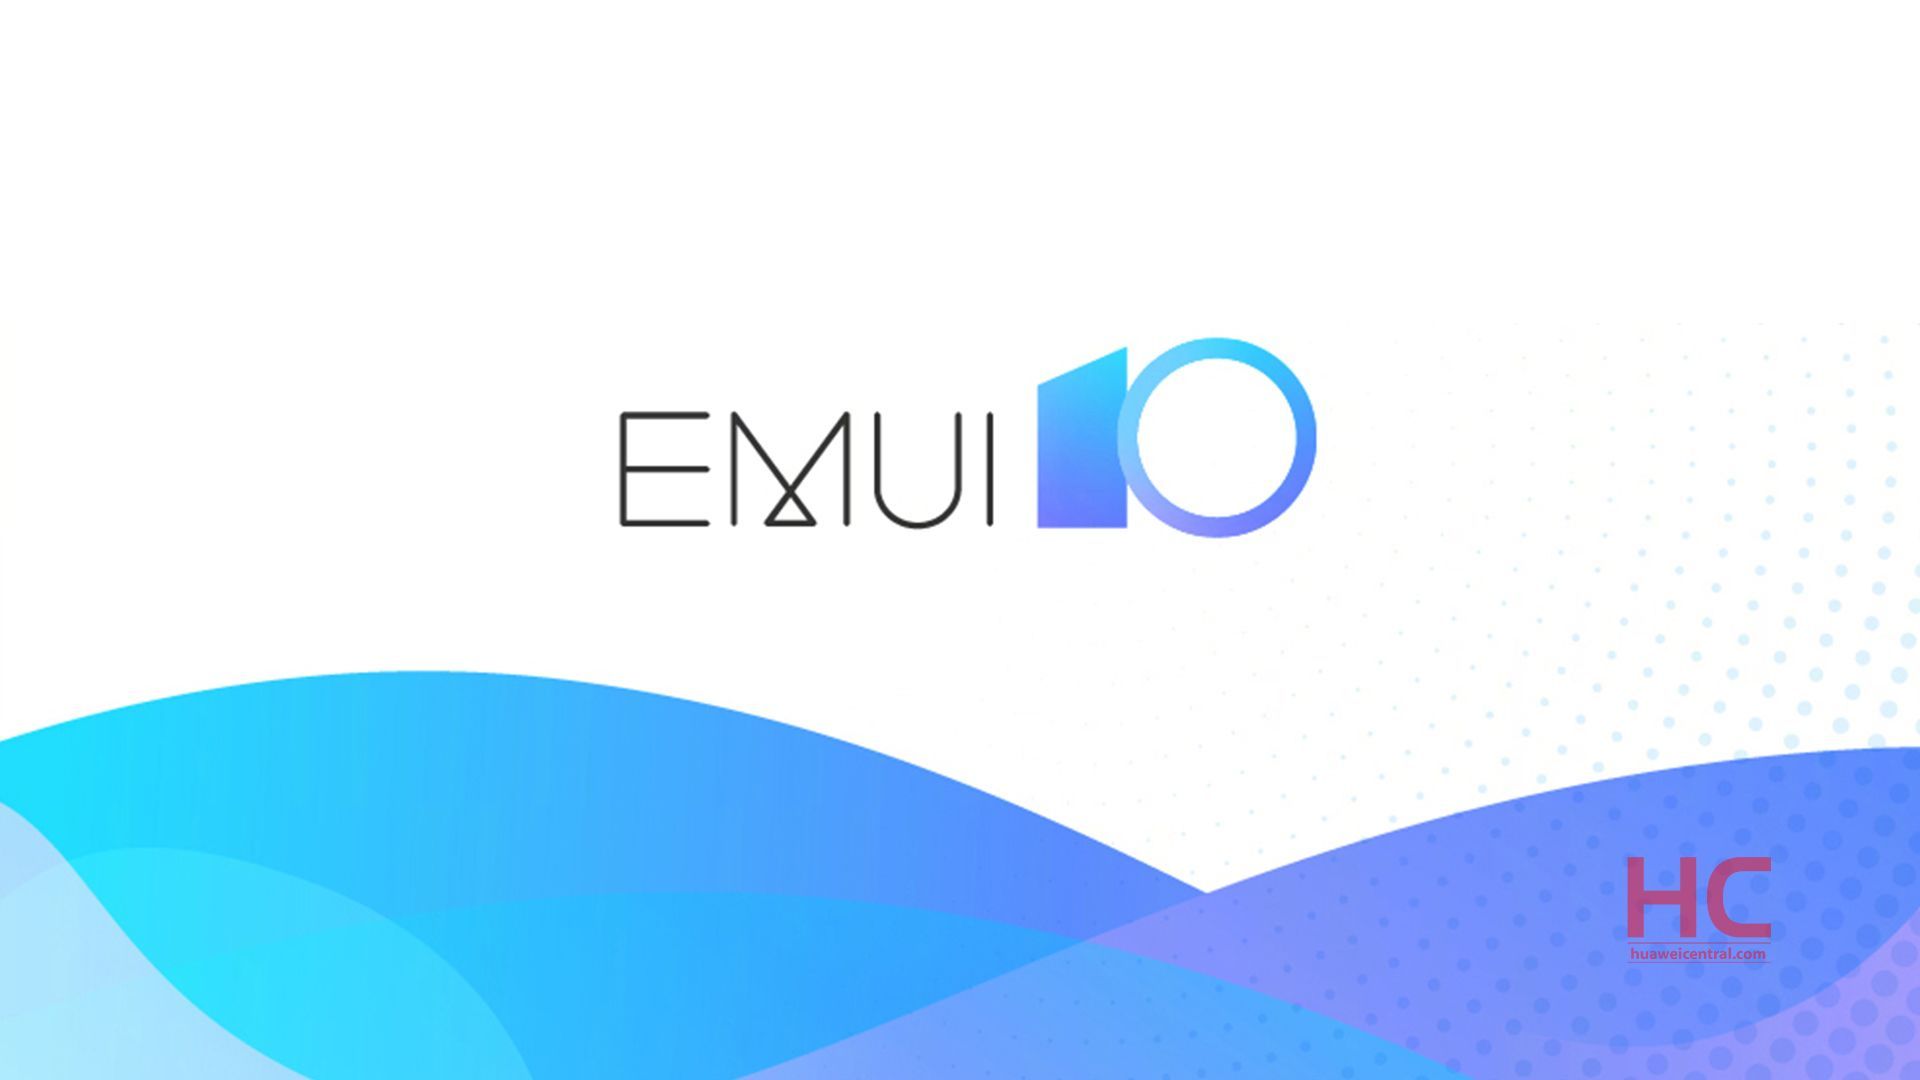 Запуск бета-версии EMUI 10 начнется с 8 сентября, а серии Mate 20 получат бета-версию в том же месяце